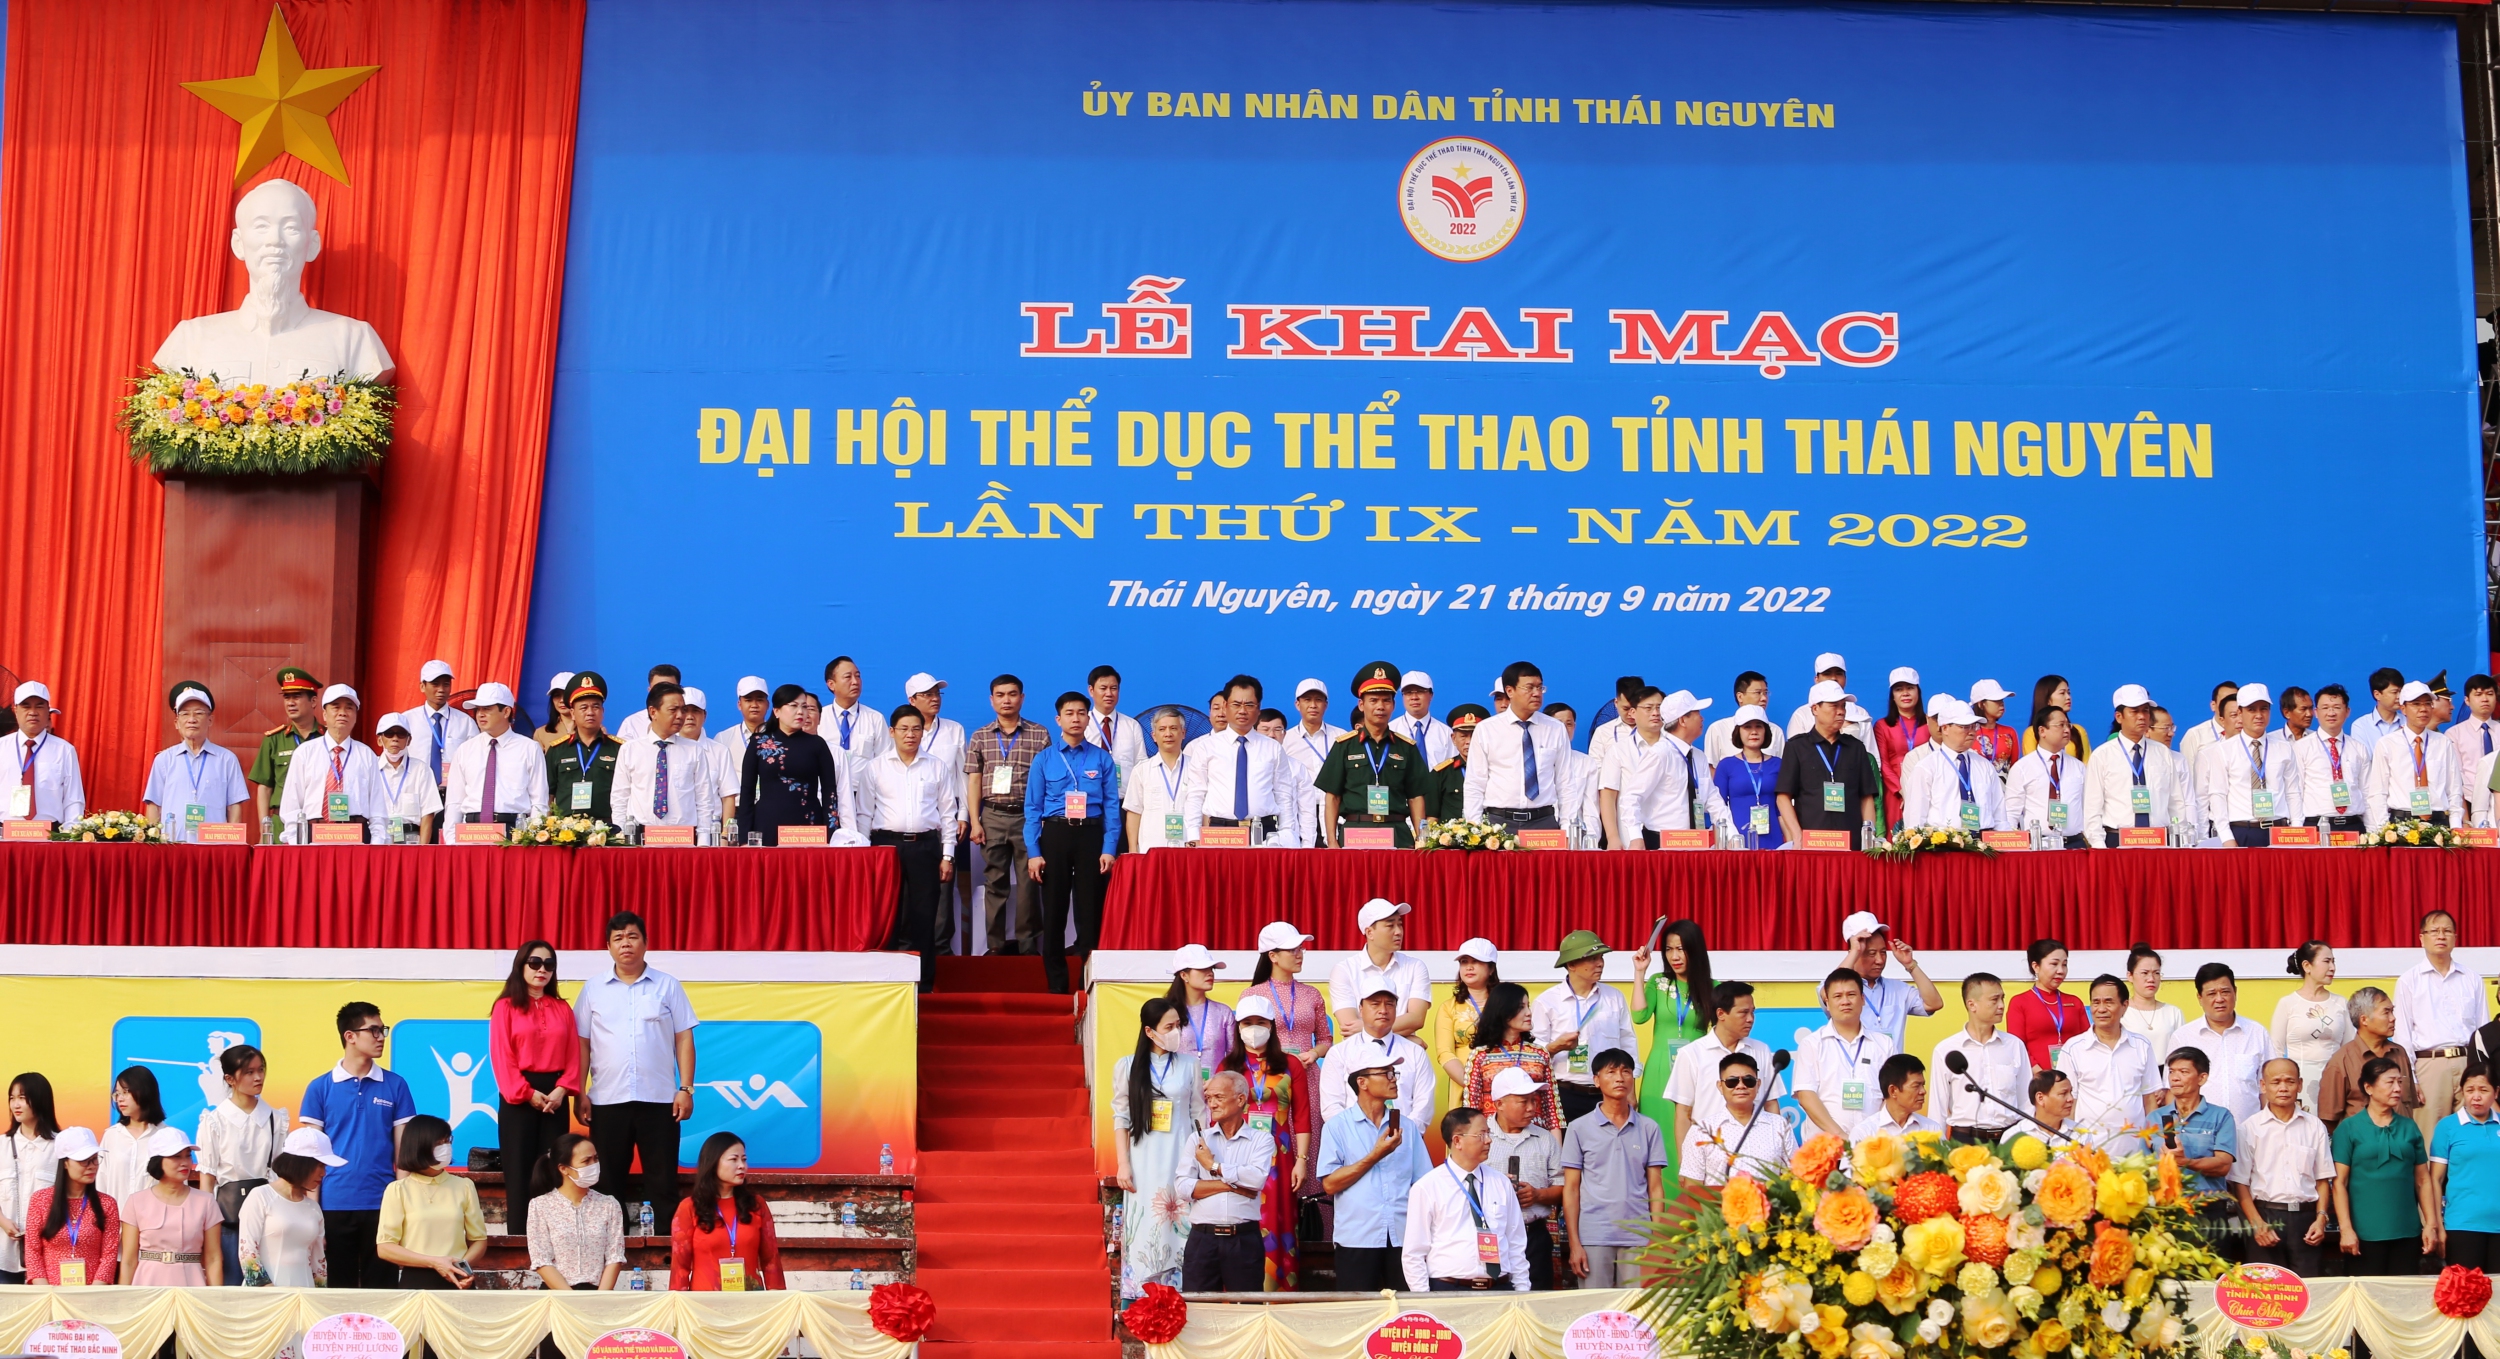 Khai mạc Đại hội Thể dục thể thao tỉnh Thái Nguyên lần thứ IX - năm 2022